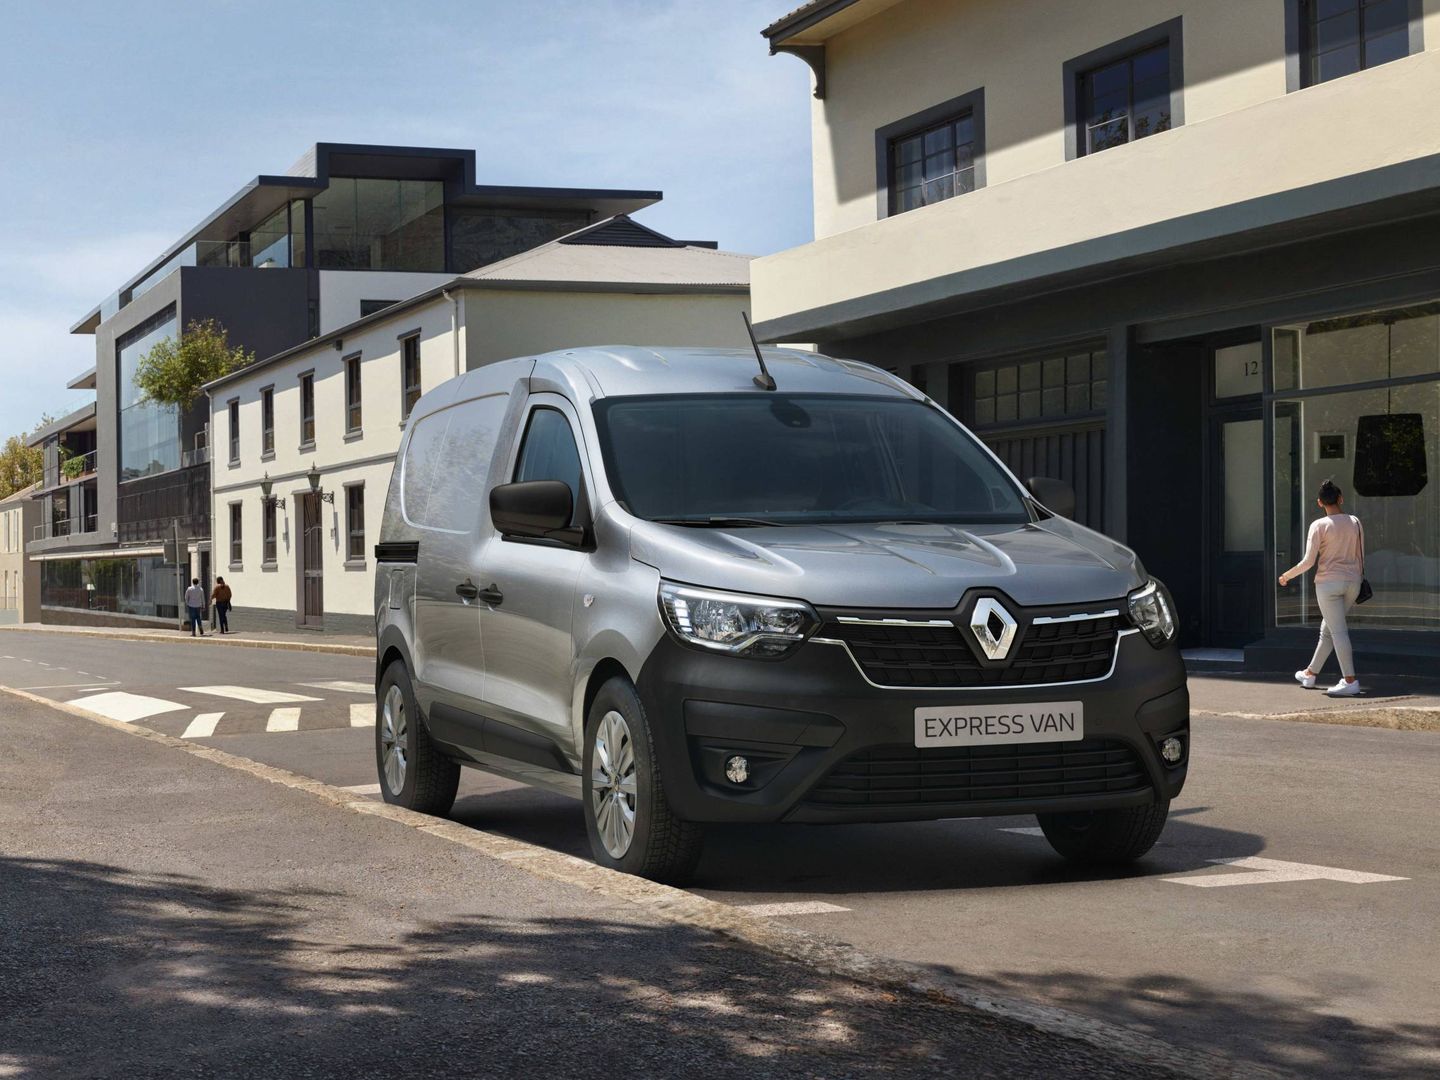 Renault es líder en matriculaciones por renting como marca y por modelo con el Express.